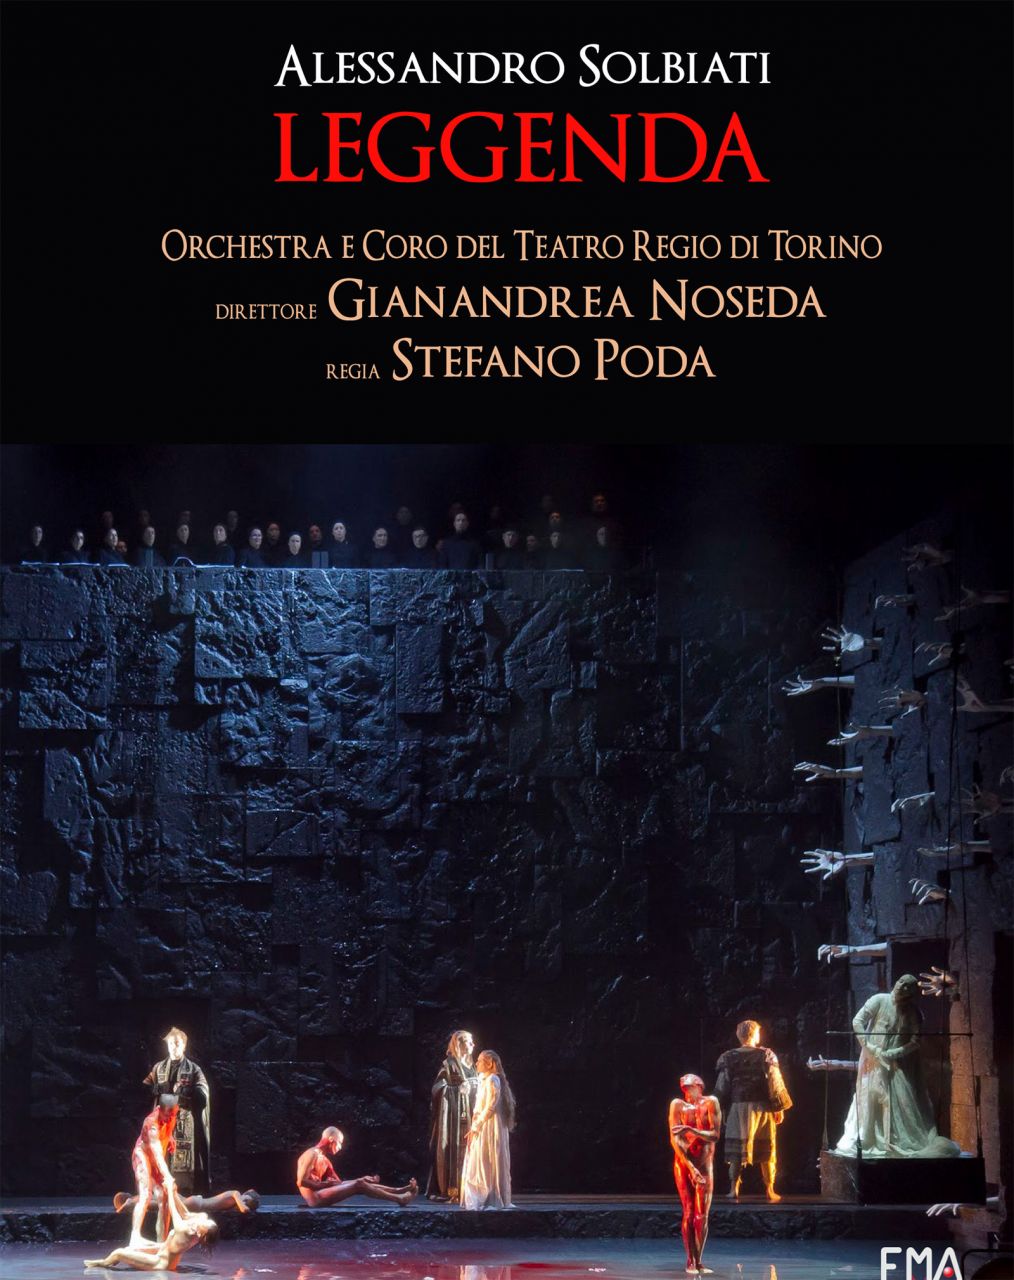 Leggenda by Alessandro Solbiati - Season 2010-2011